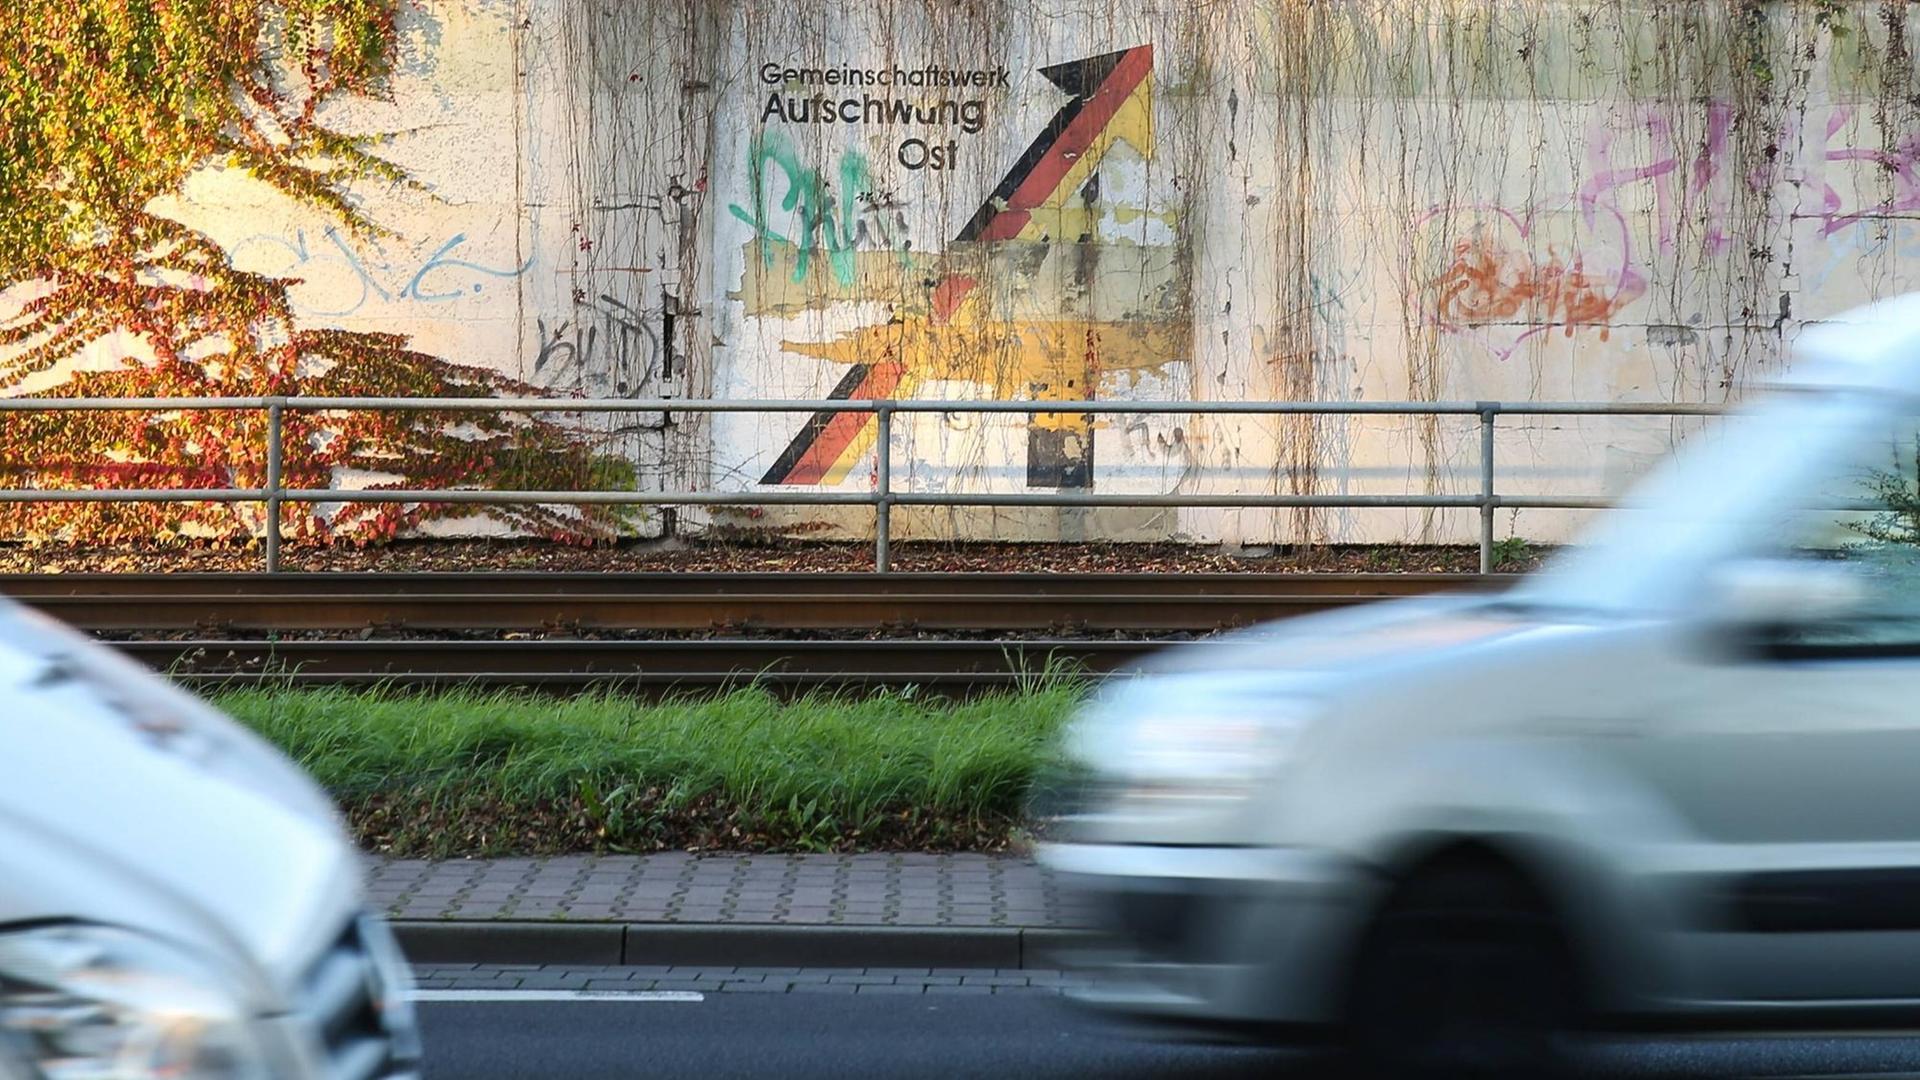 Der Schriftzug "Gemeinschaftswerk Aufschwung Ost" mit Pfeil in den Farben Schwarz, Rot, Gold an einer Mauer in Magdeburg, fotografiert am 30.10.2017.